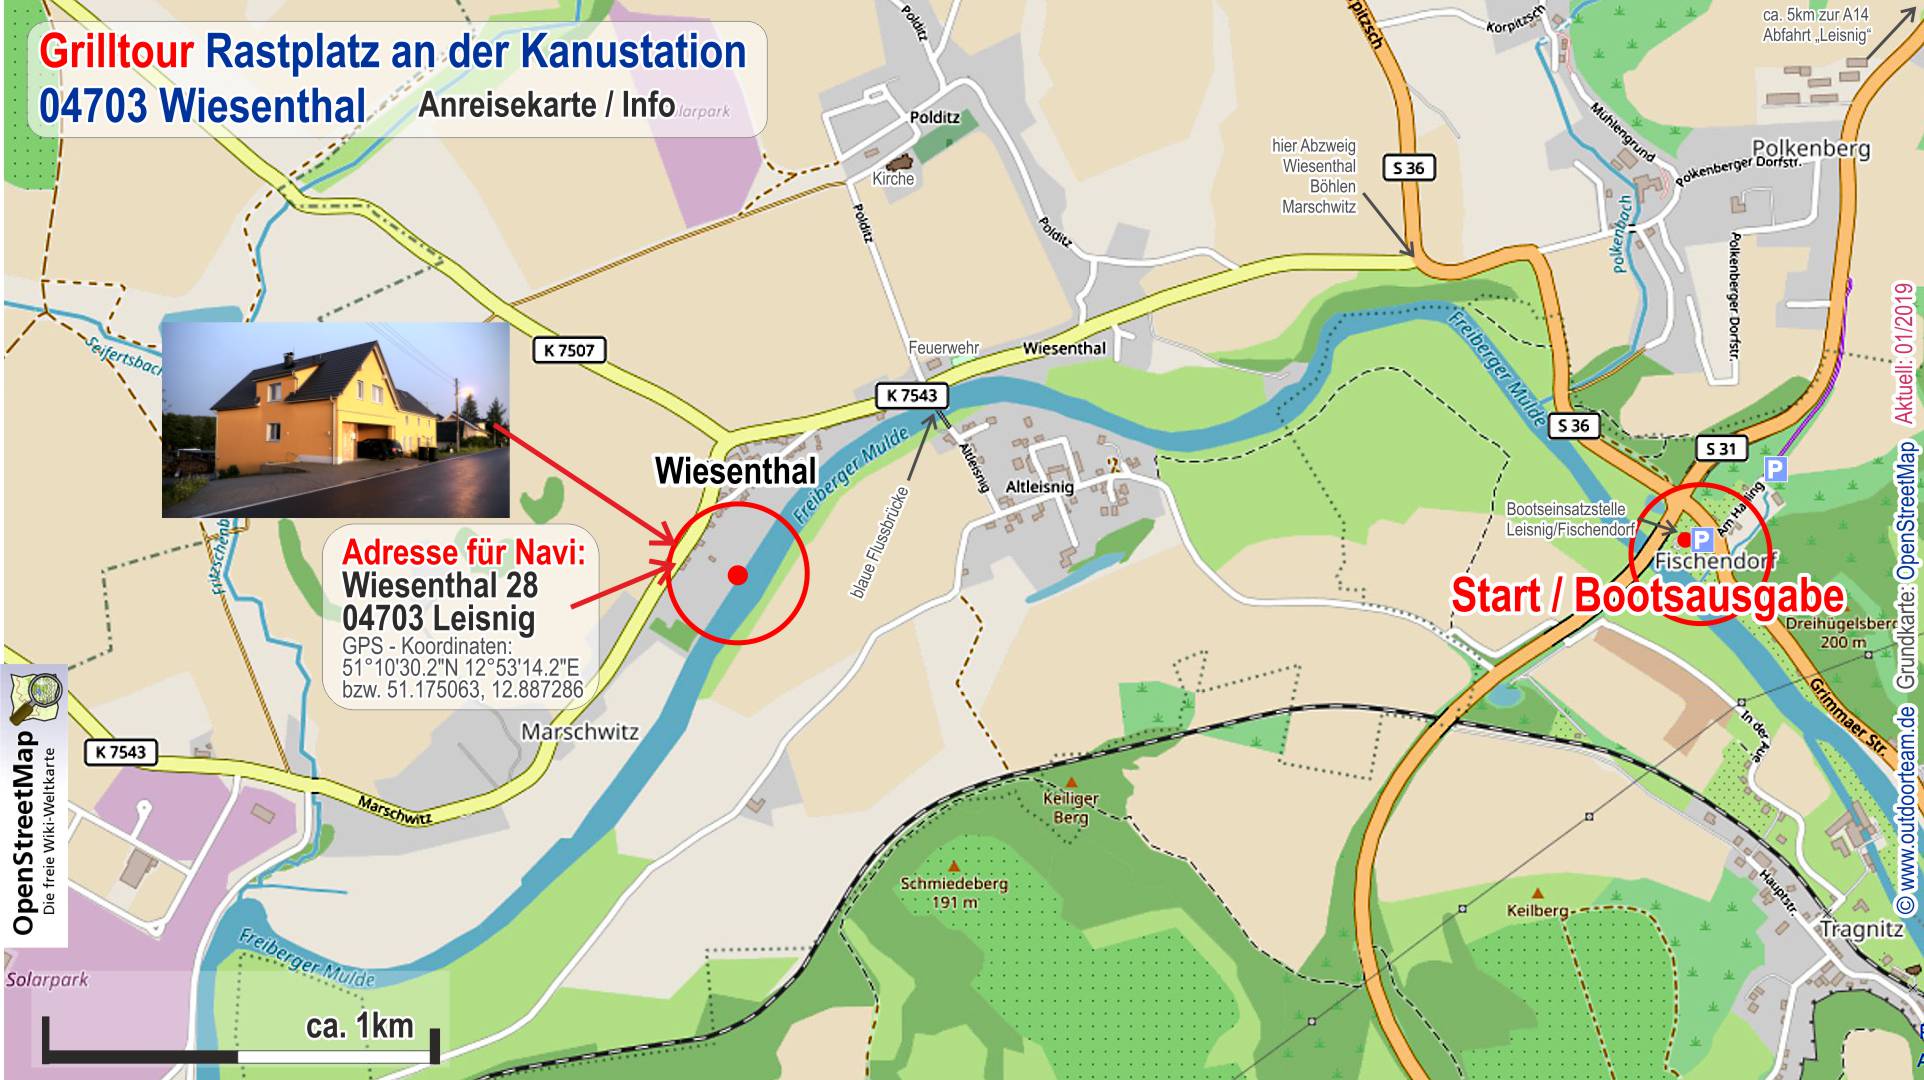 Detailkarte und Adressdaten vom Grillpicknick-Bereich  im Ort Wiesenthal - Schlauchboottour mit Grillpicknick auf der Freiberger Mulde.